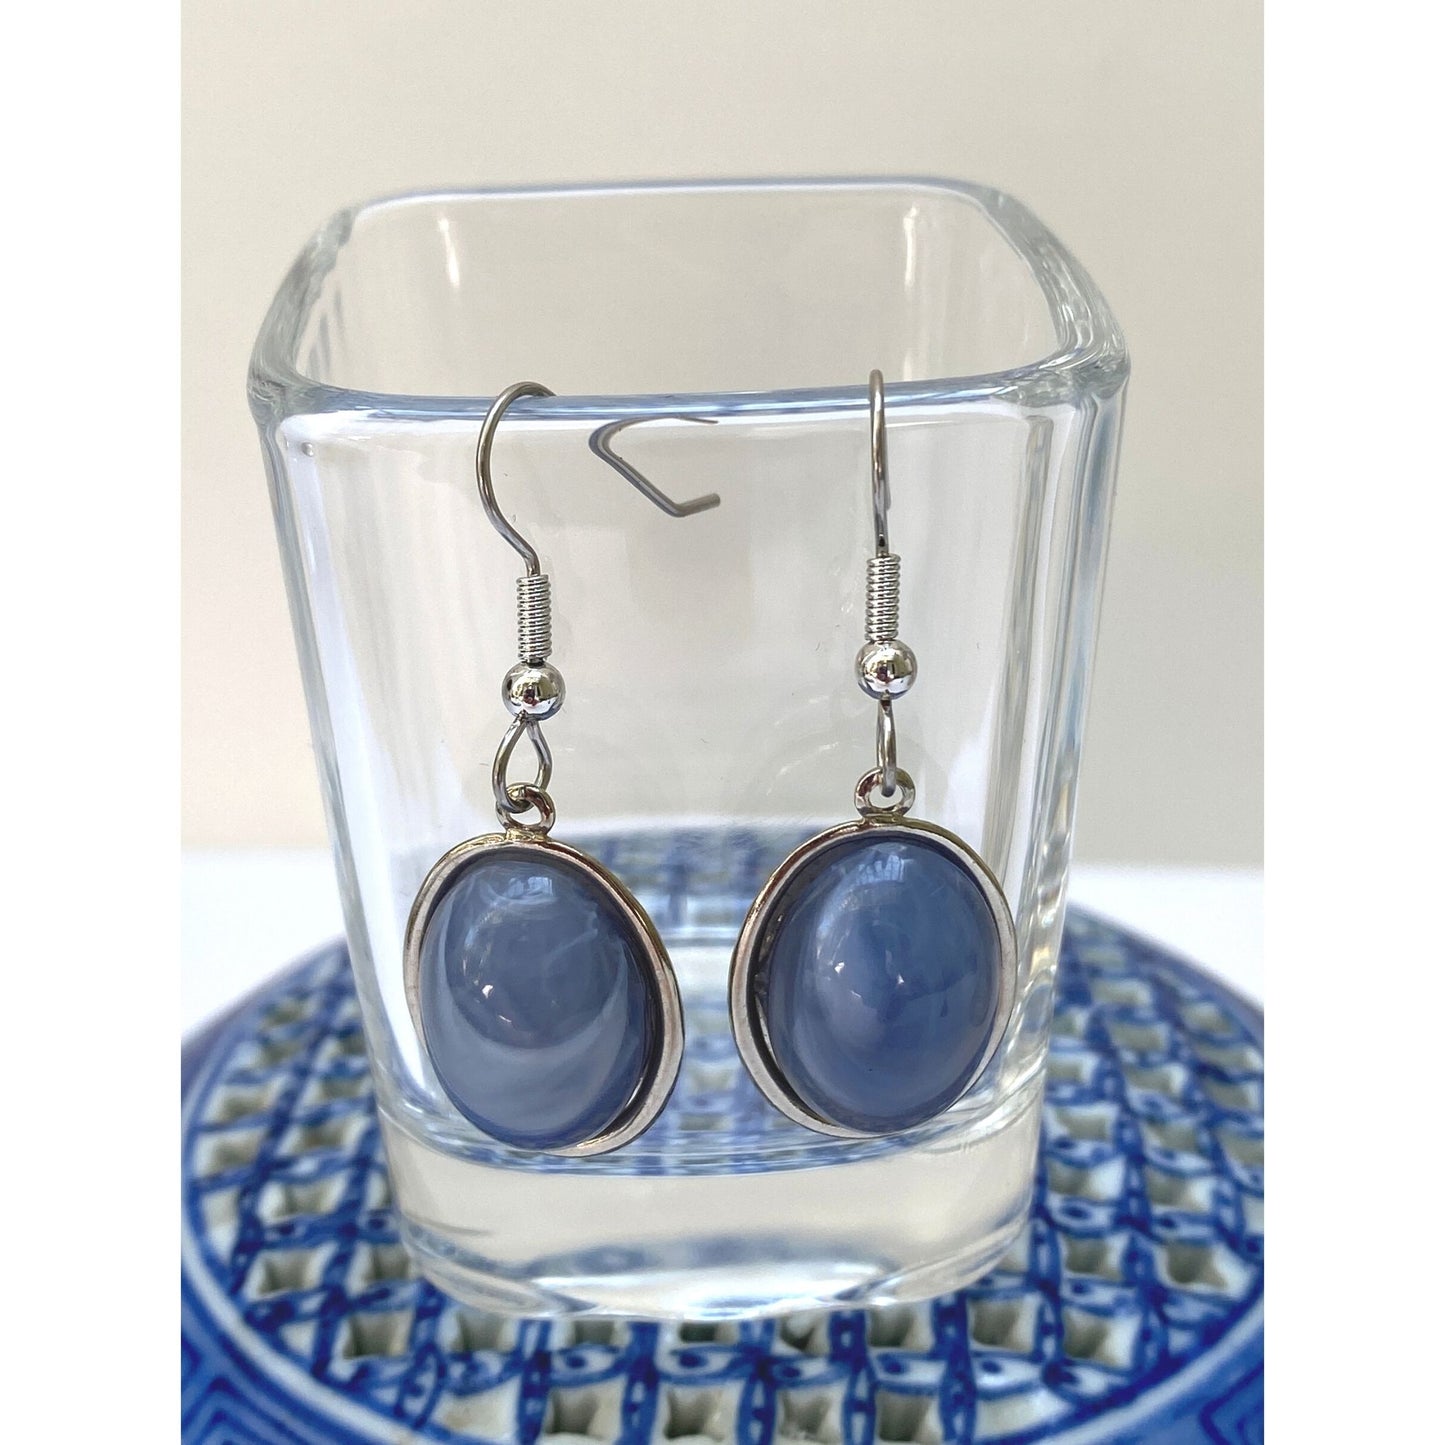 Silver Earrings, Blue Oval Cabochon